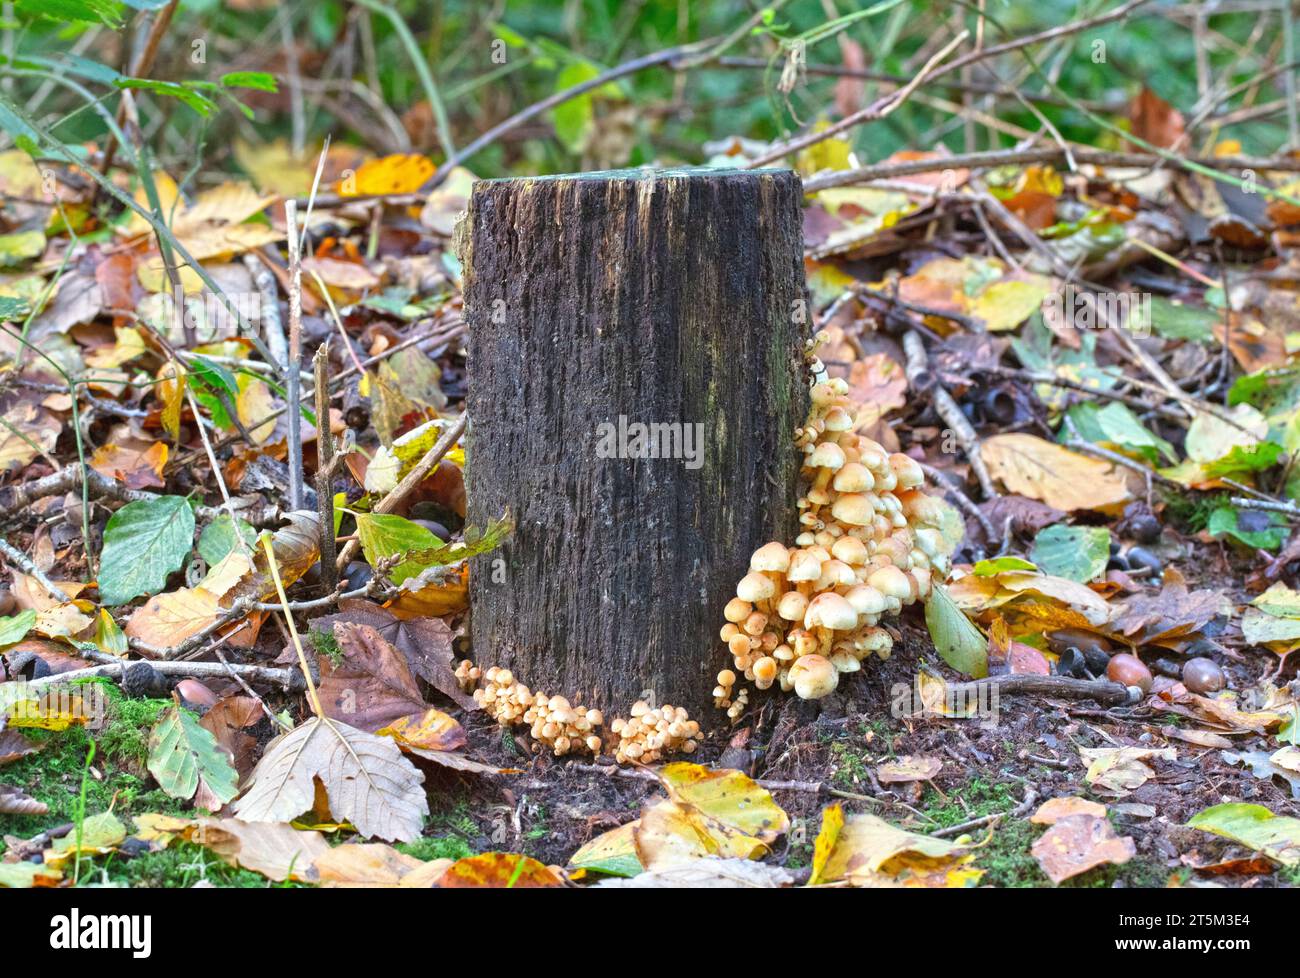 Groupe de champignons bruns dans une forêt à l'automne, pays-Bas Banque D'Images